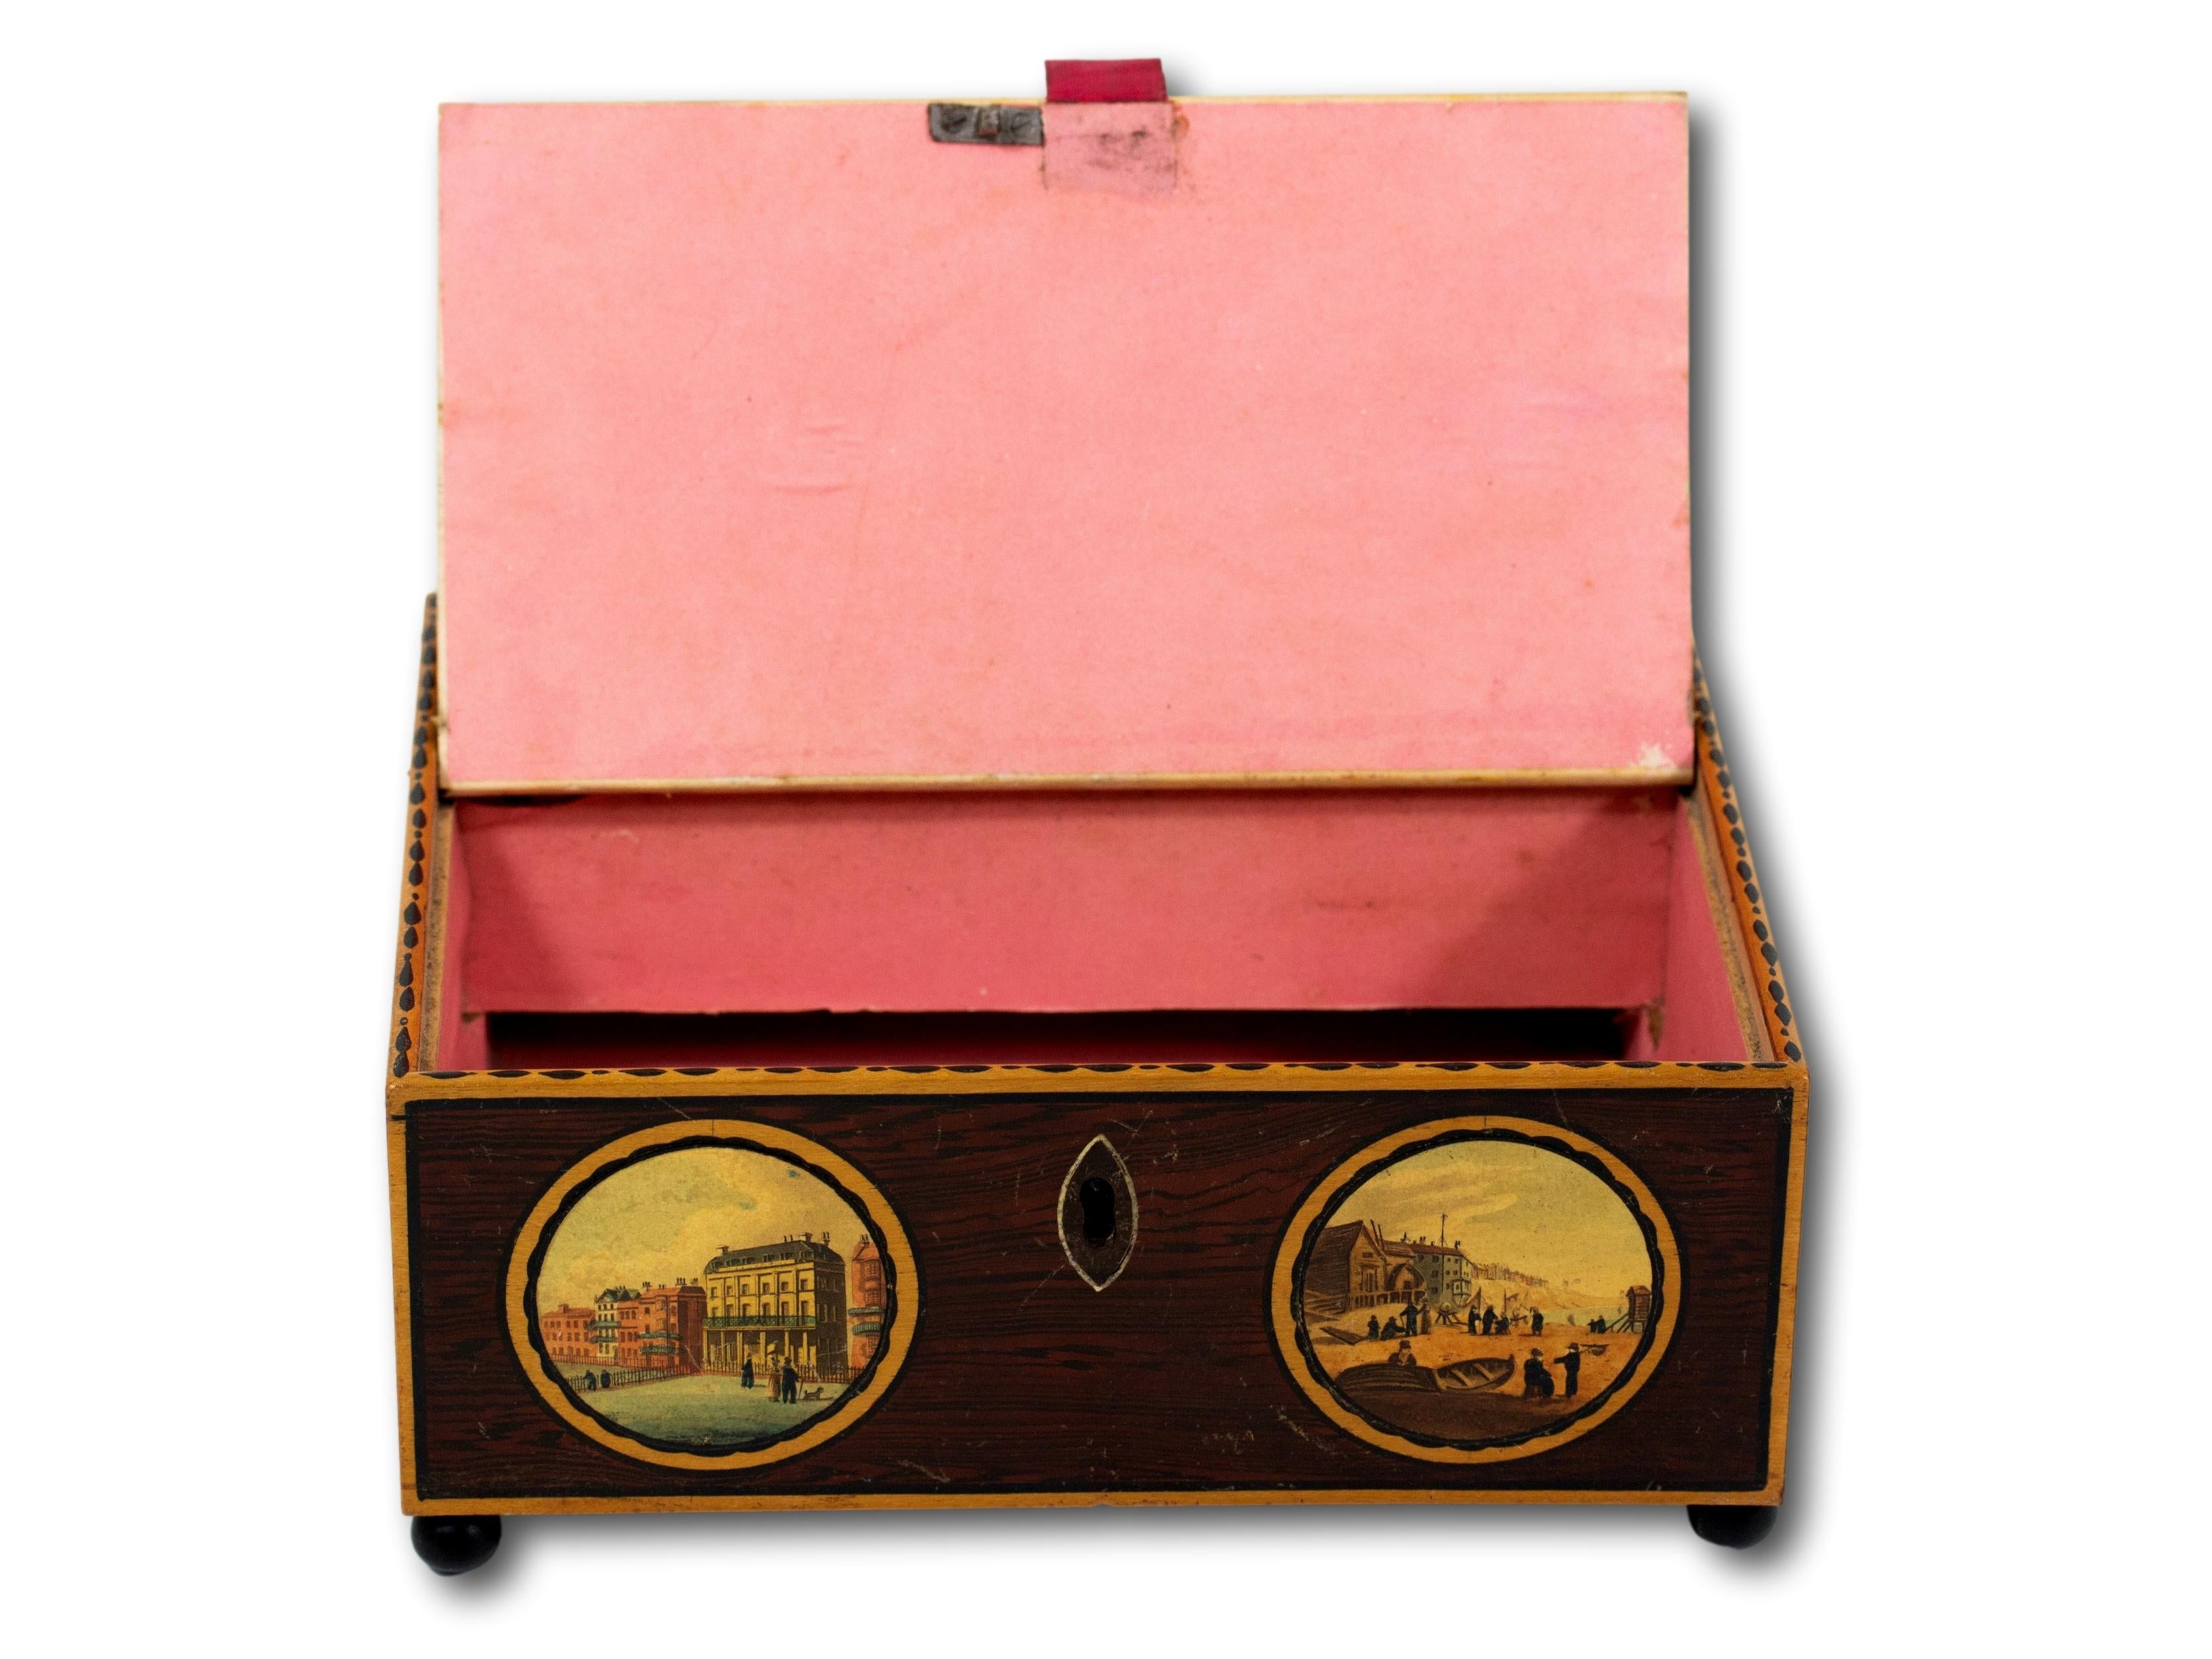 Sycamore Tunbridge Ware Sewing Box